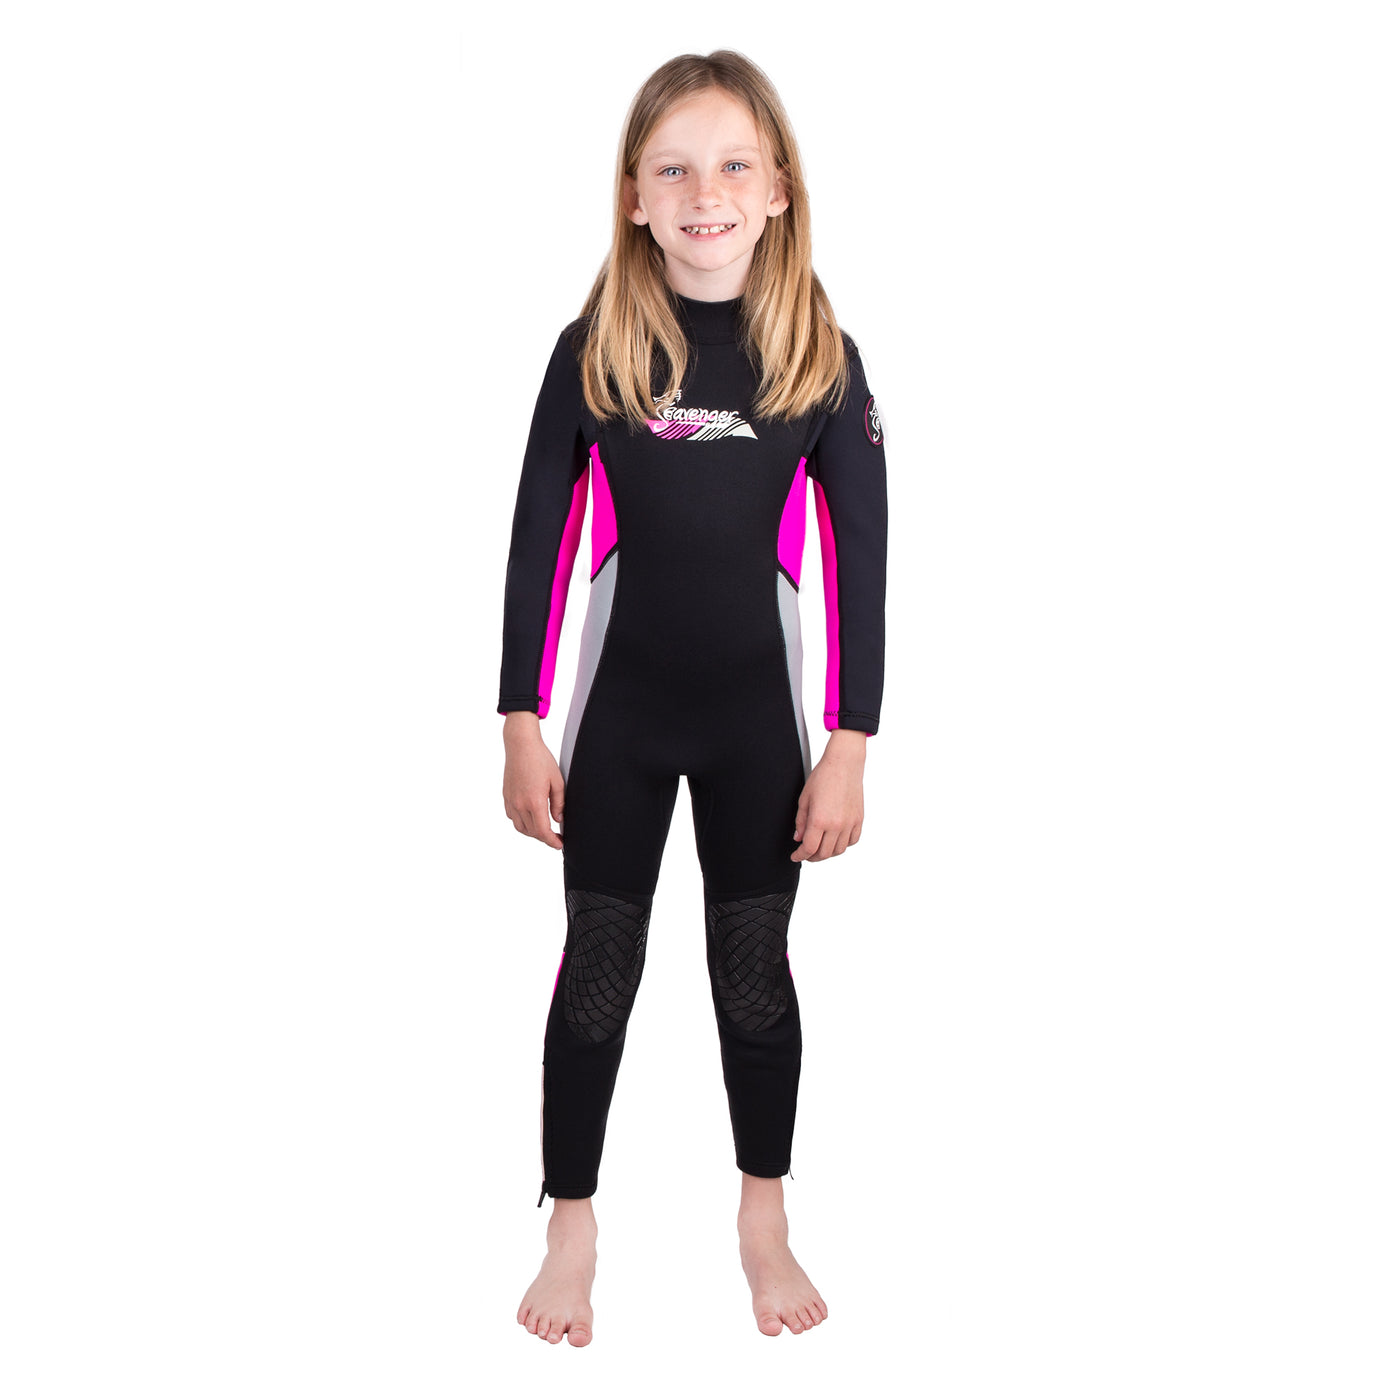 Seavenger Scout 3mm Child Wetsuit – Shop709.com